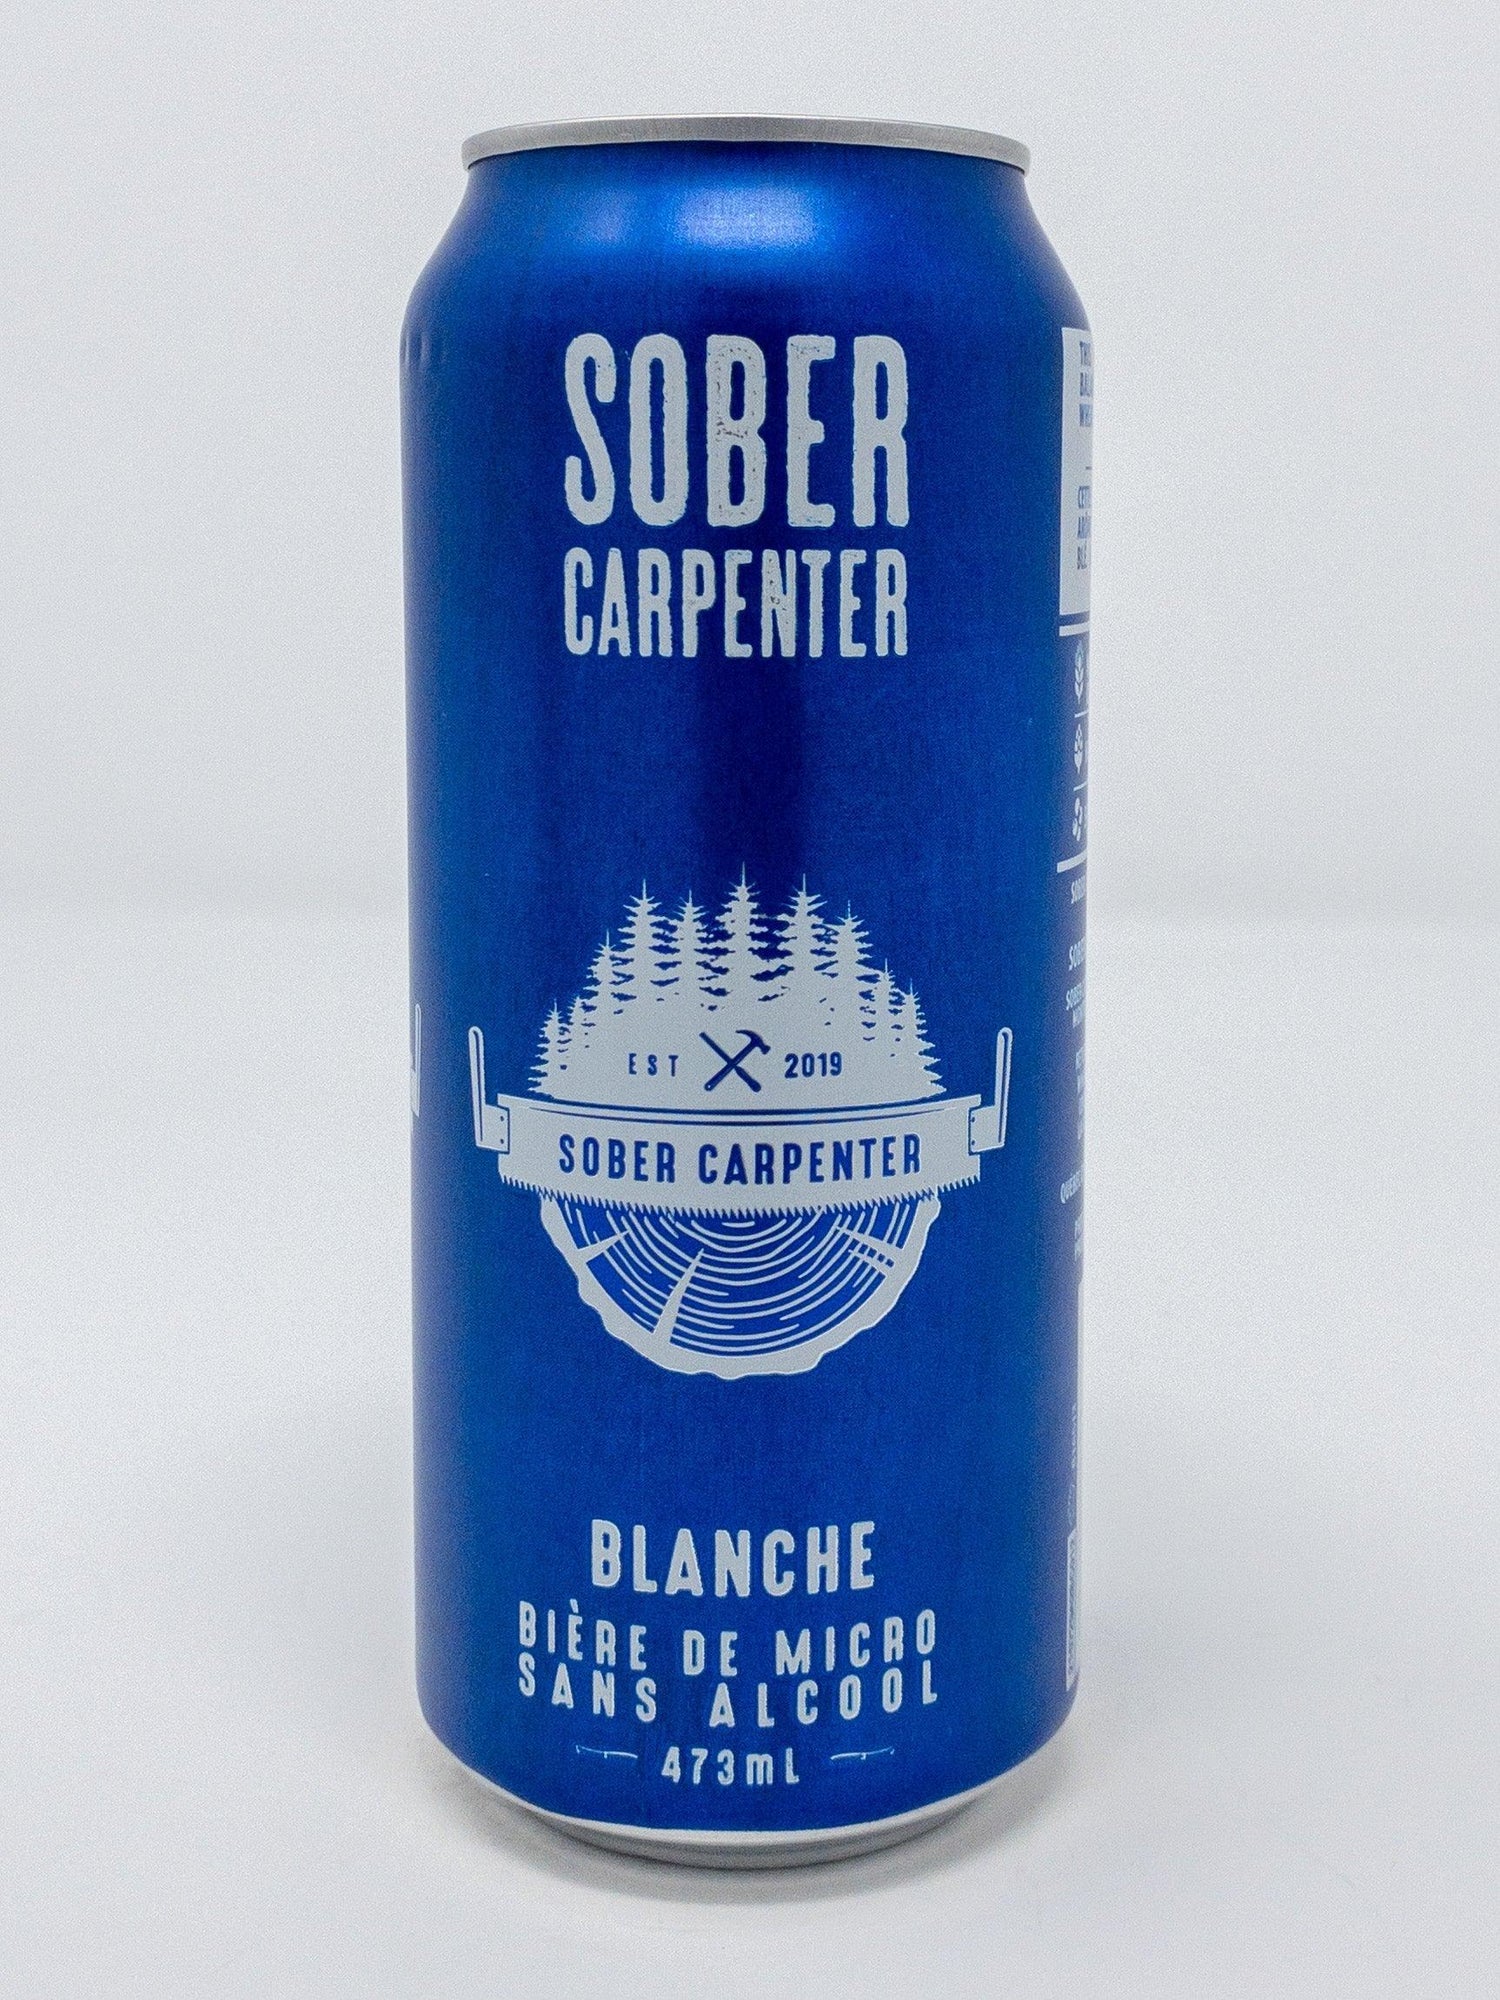 Blanche - 0% alcool - Sans Alcool - Sober Carpenter - Beau Dégât Bièrerie de Quartier